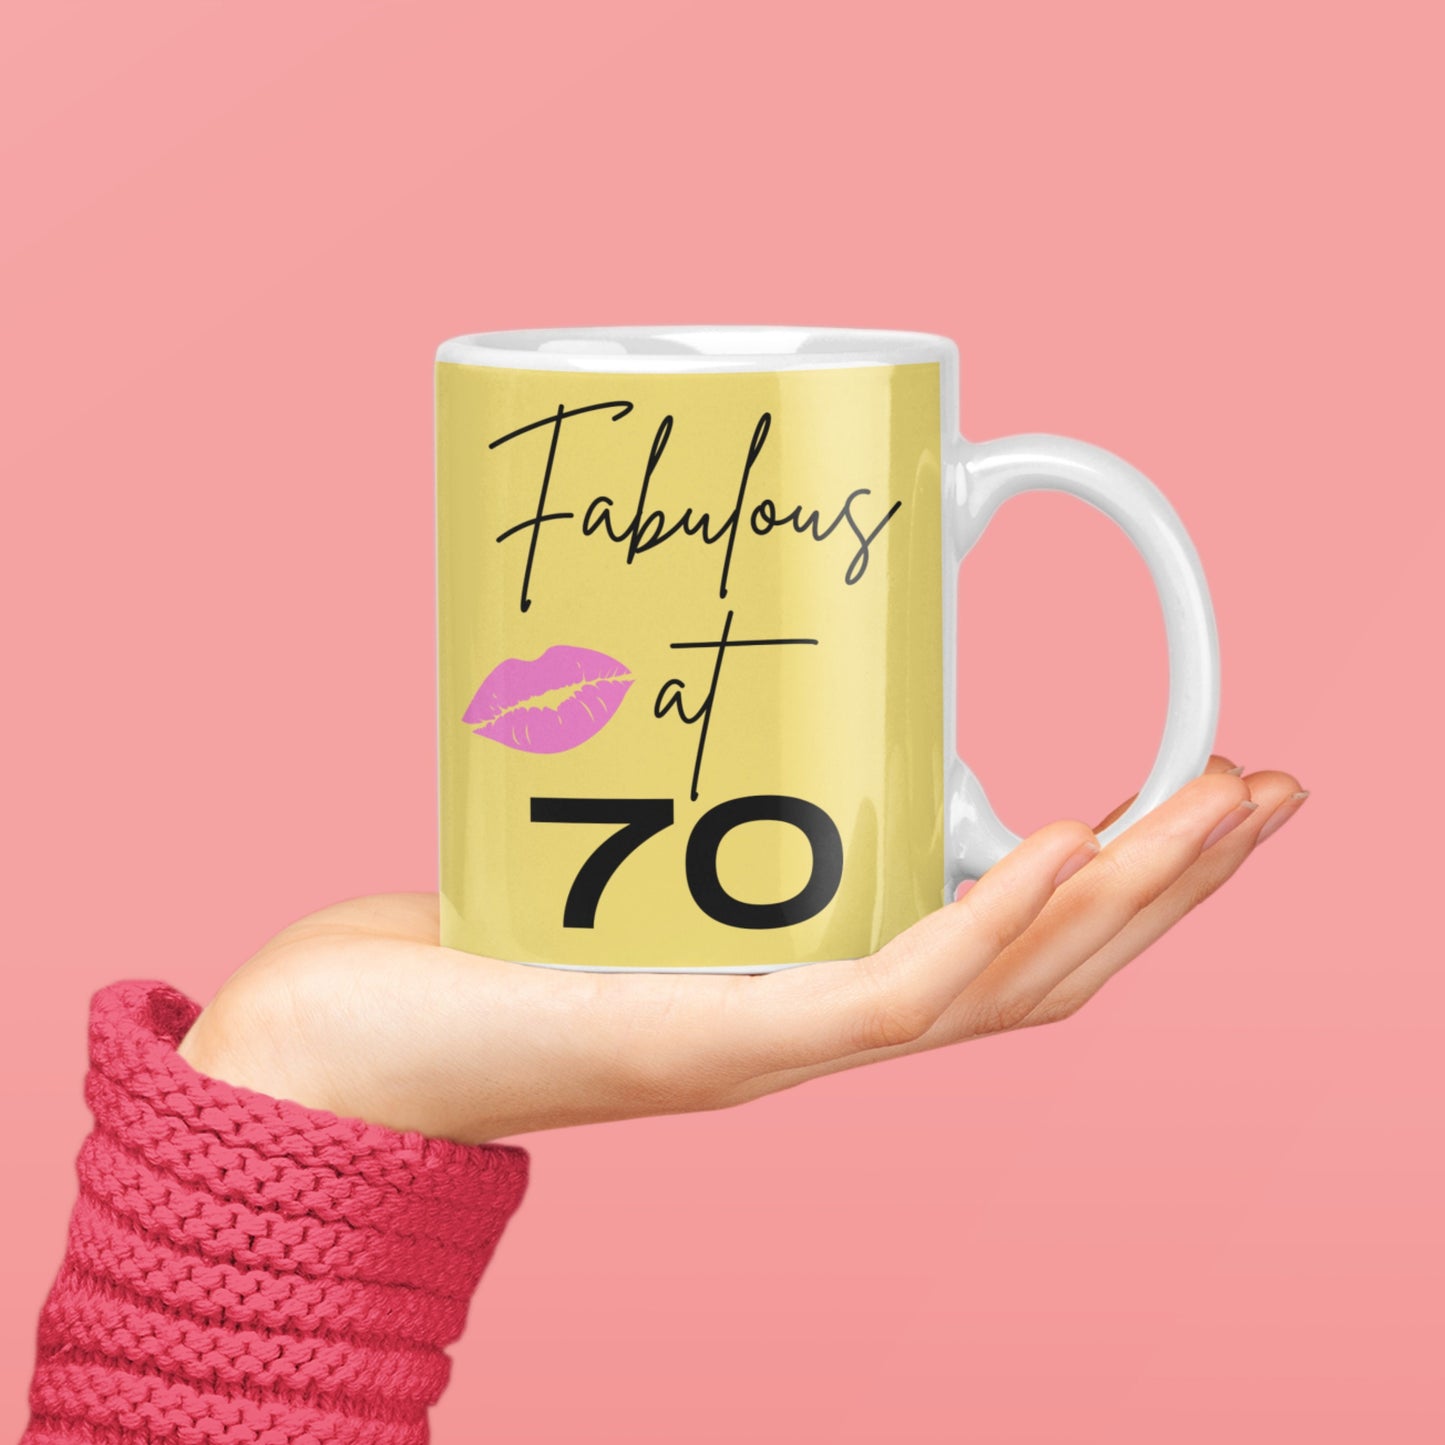 Fab at 30, 40, 50, 60, 70 Birthday Mug - Celebrate Milestones with Custom 11oz Mug | Dishwasher & Microwave Safe